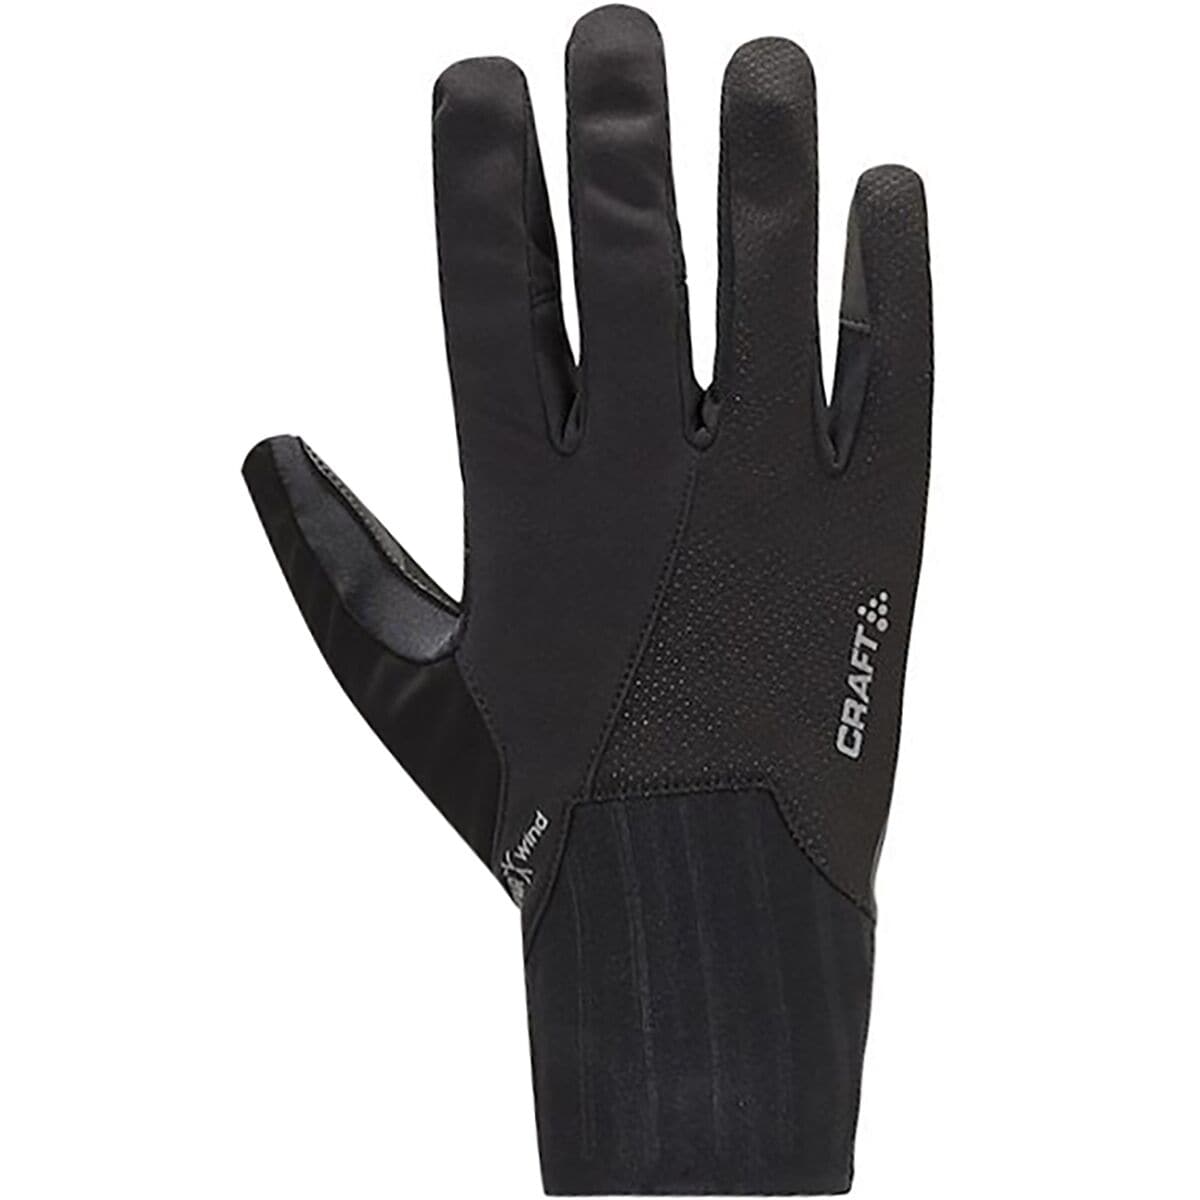 Craft All Weather Glove - Men's Black, XL